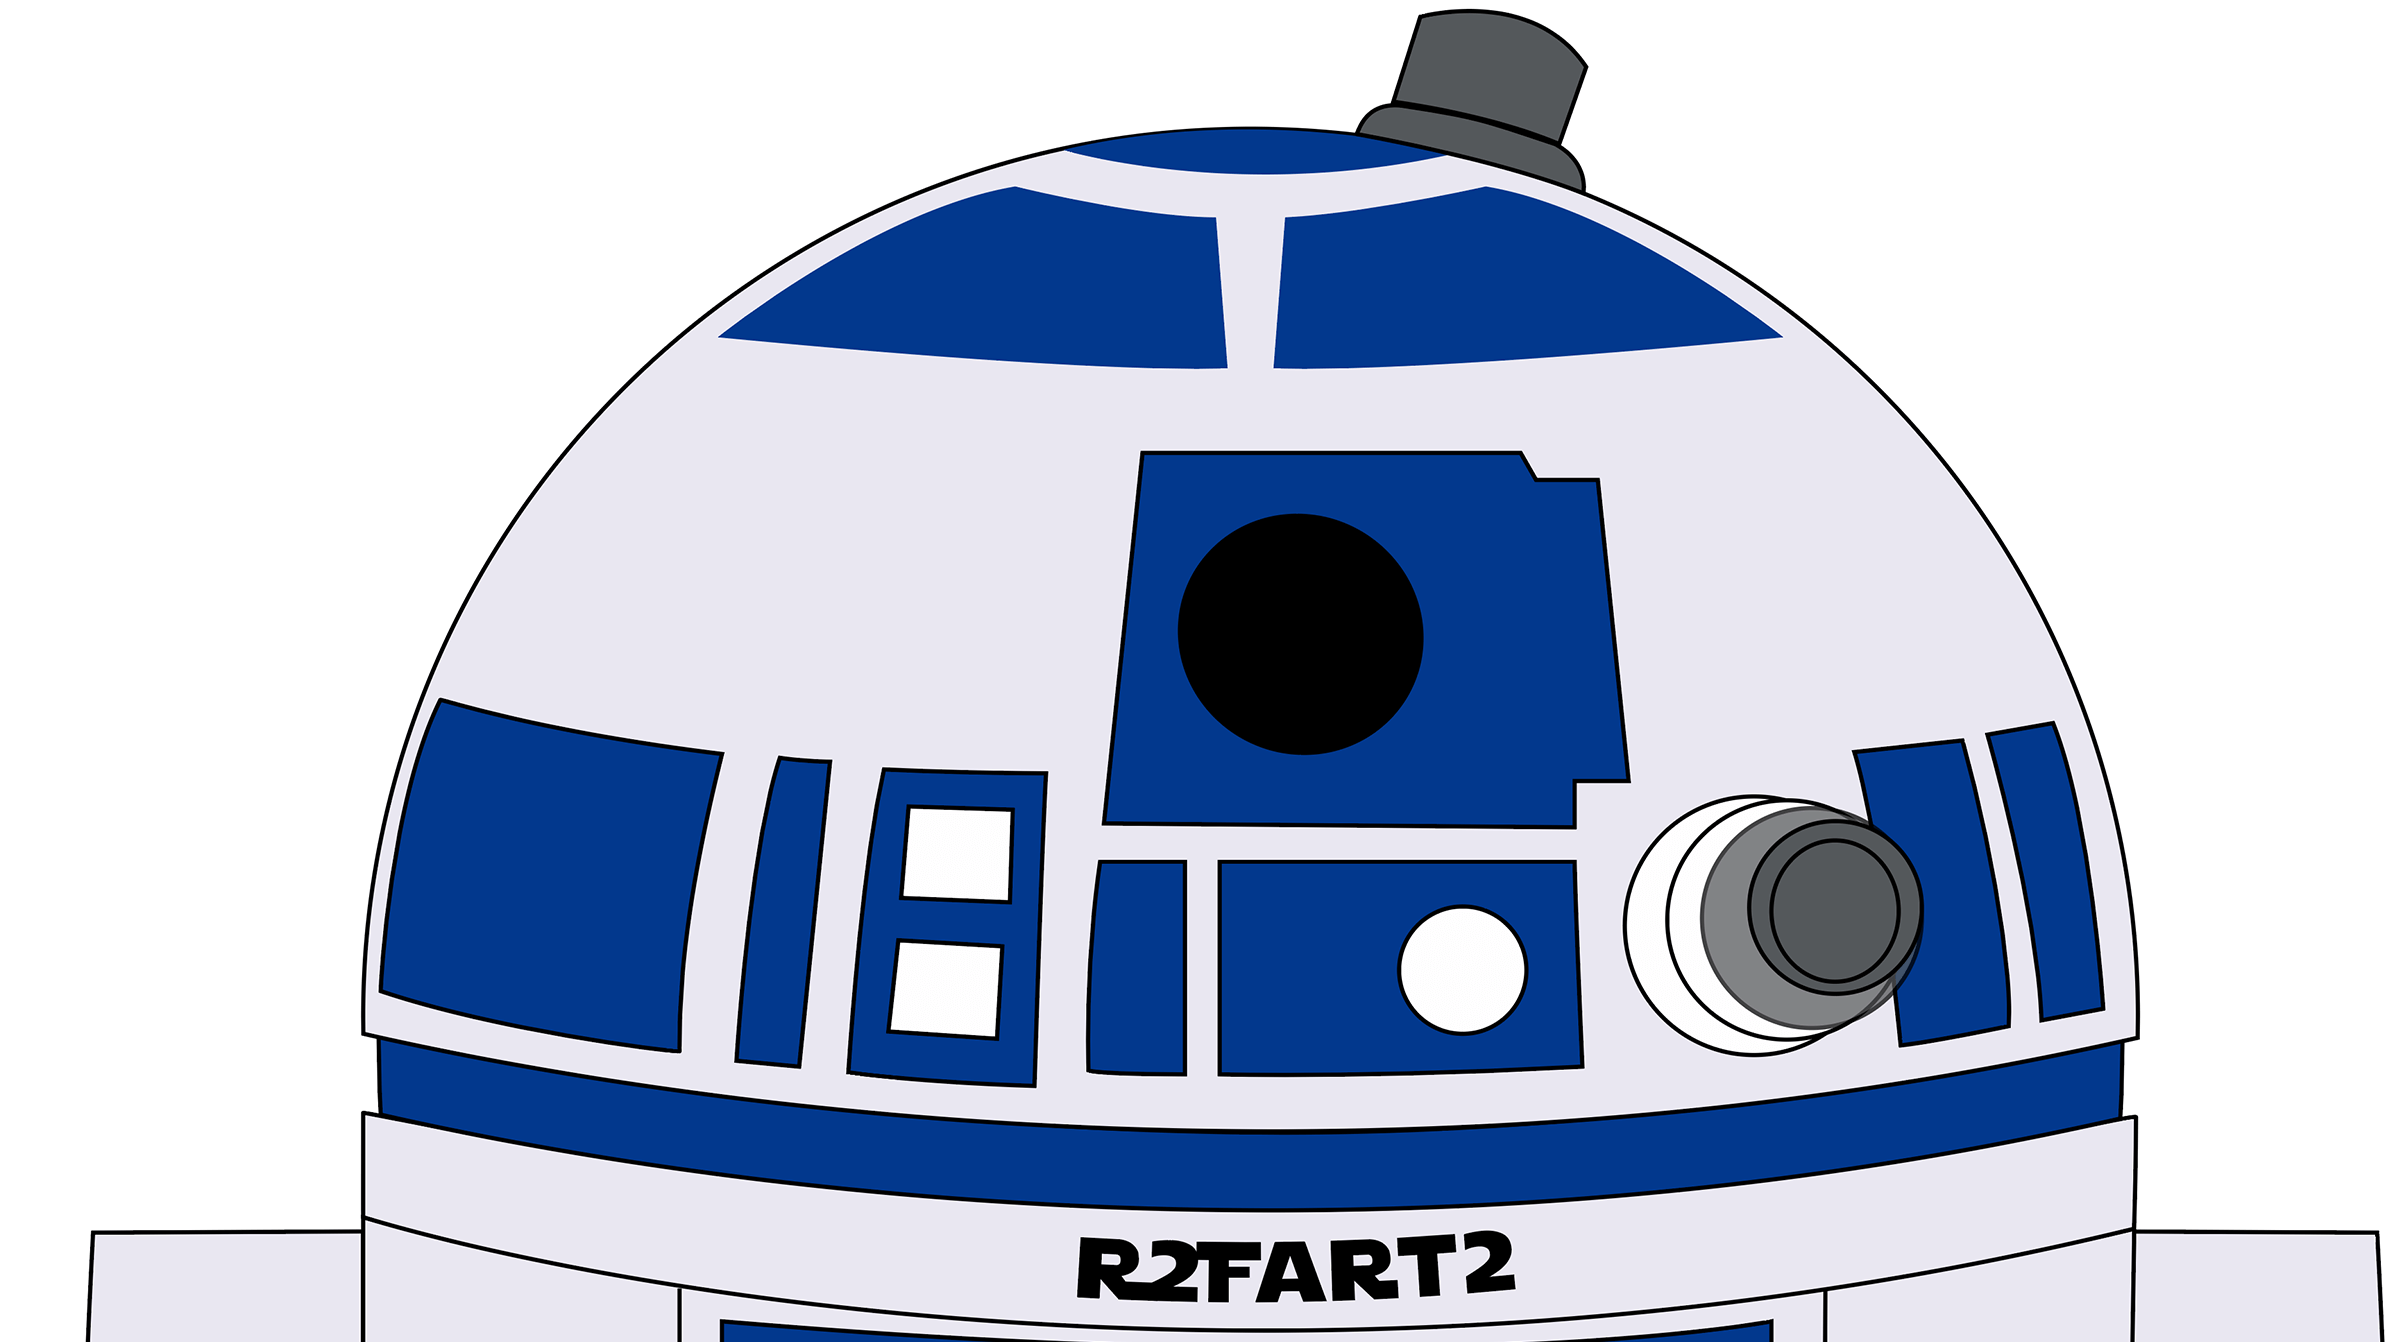 R2Fart2